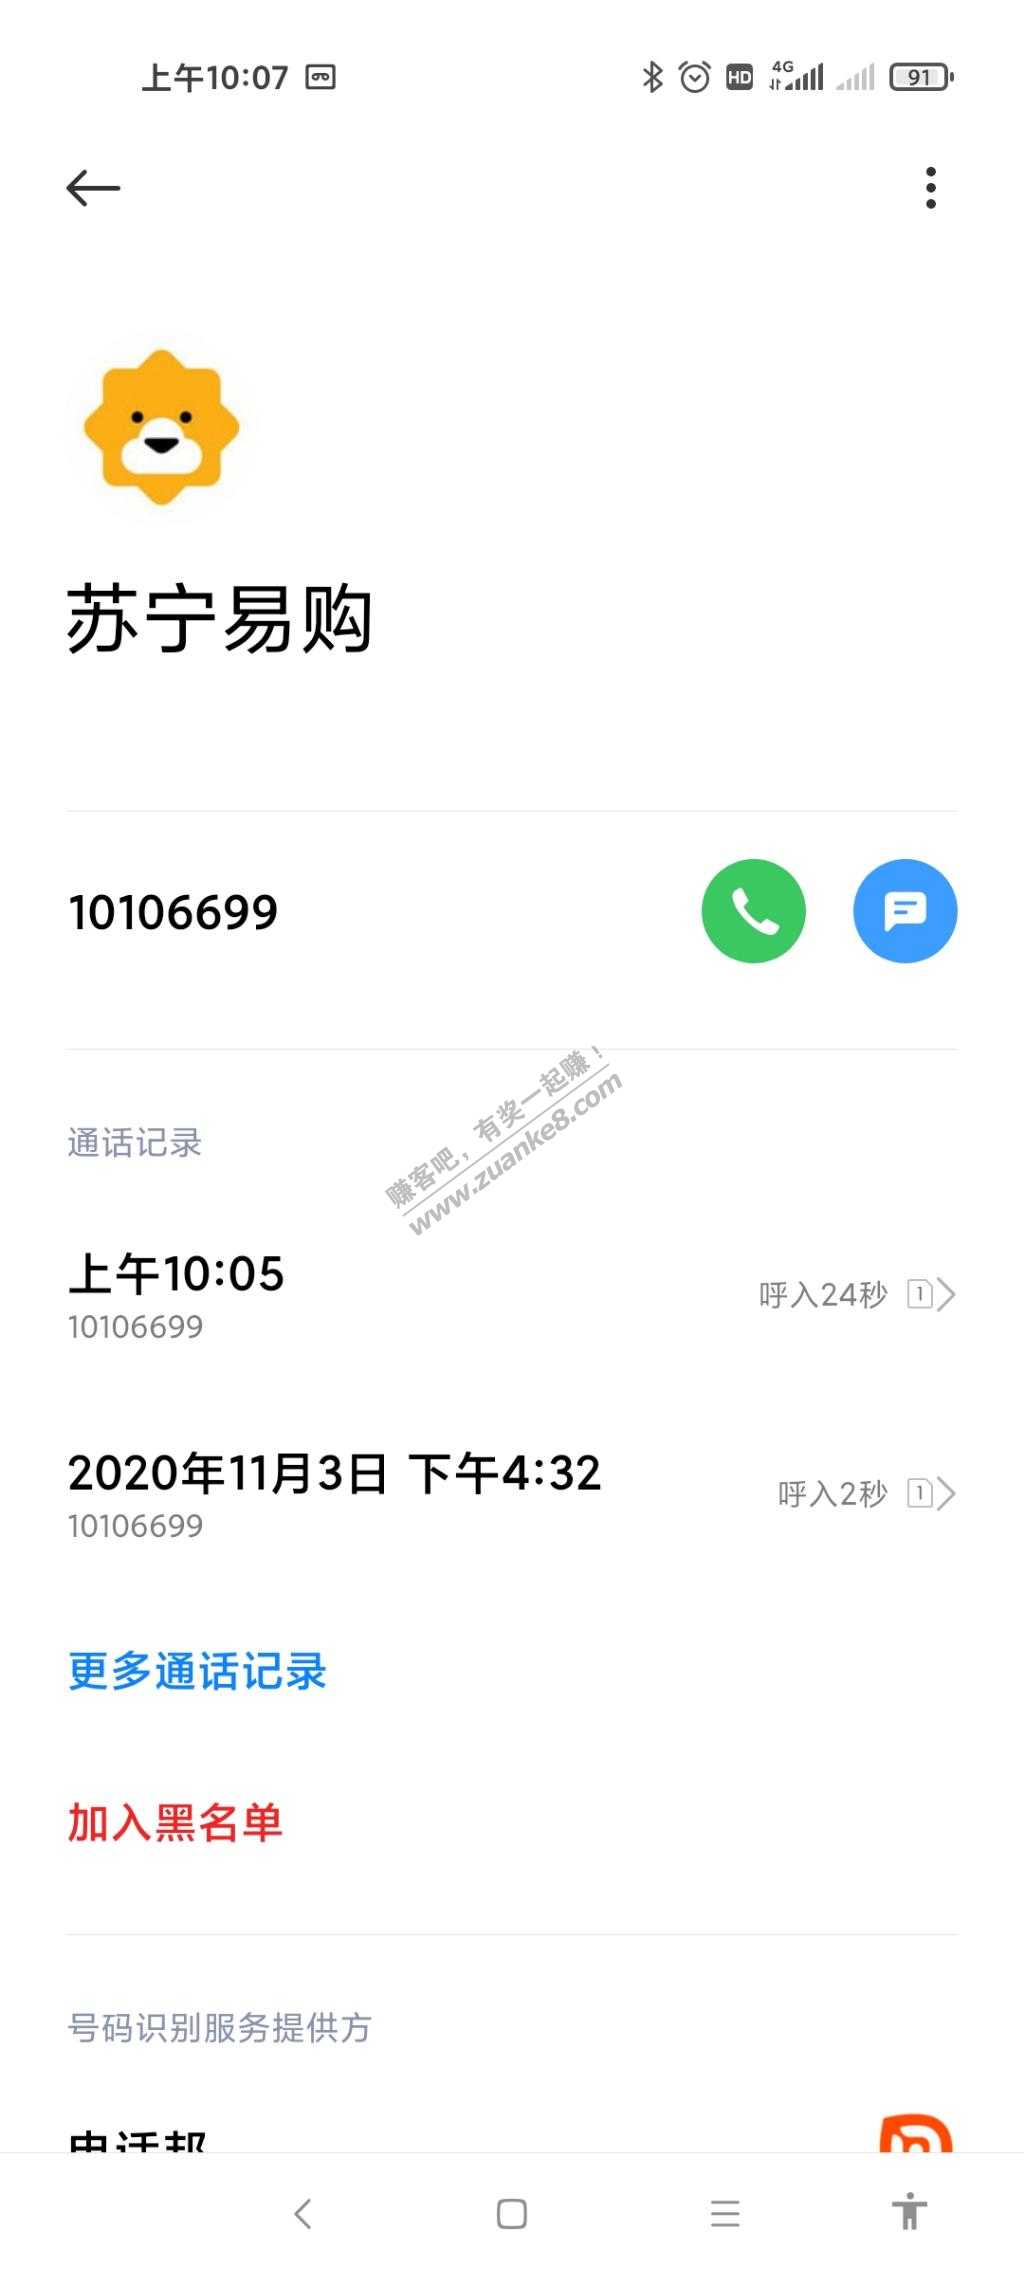 莫名其妙接到苏宁电话-惠小助(52huixz.com)